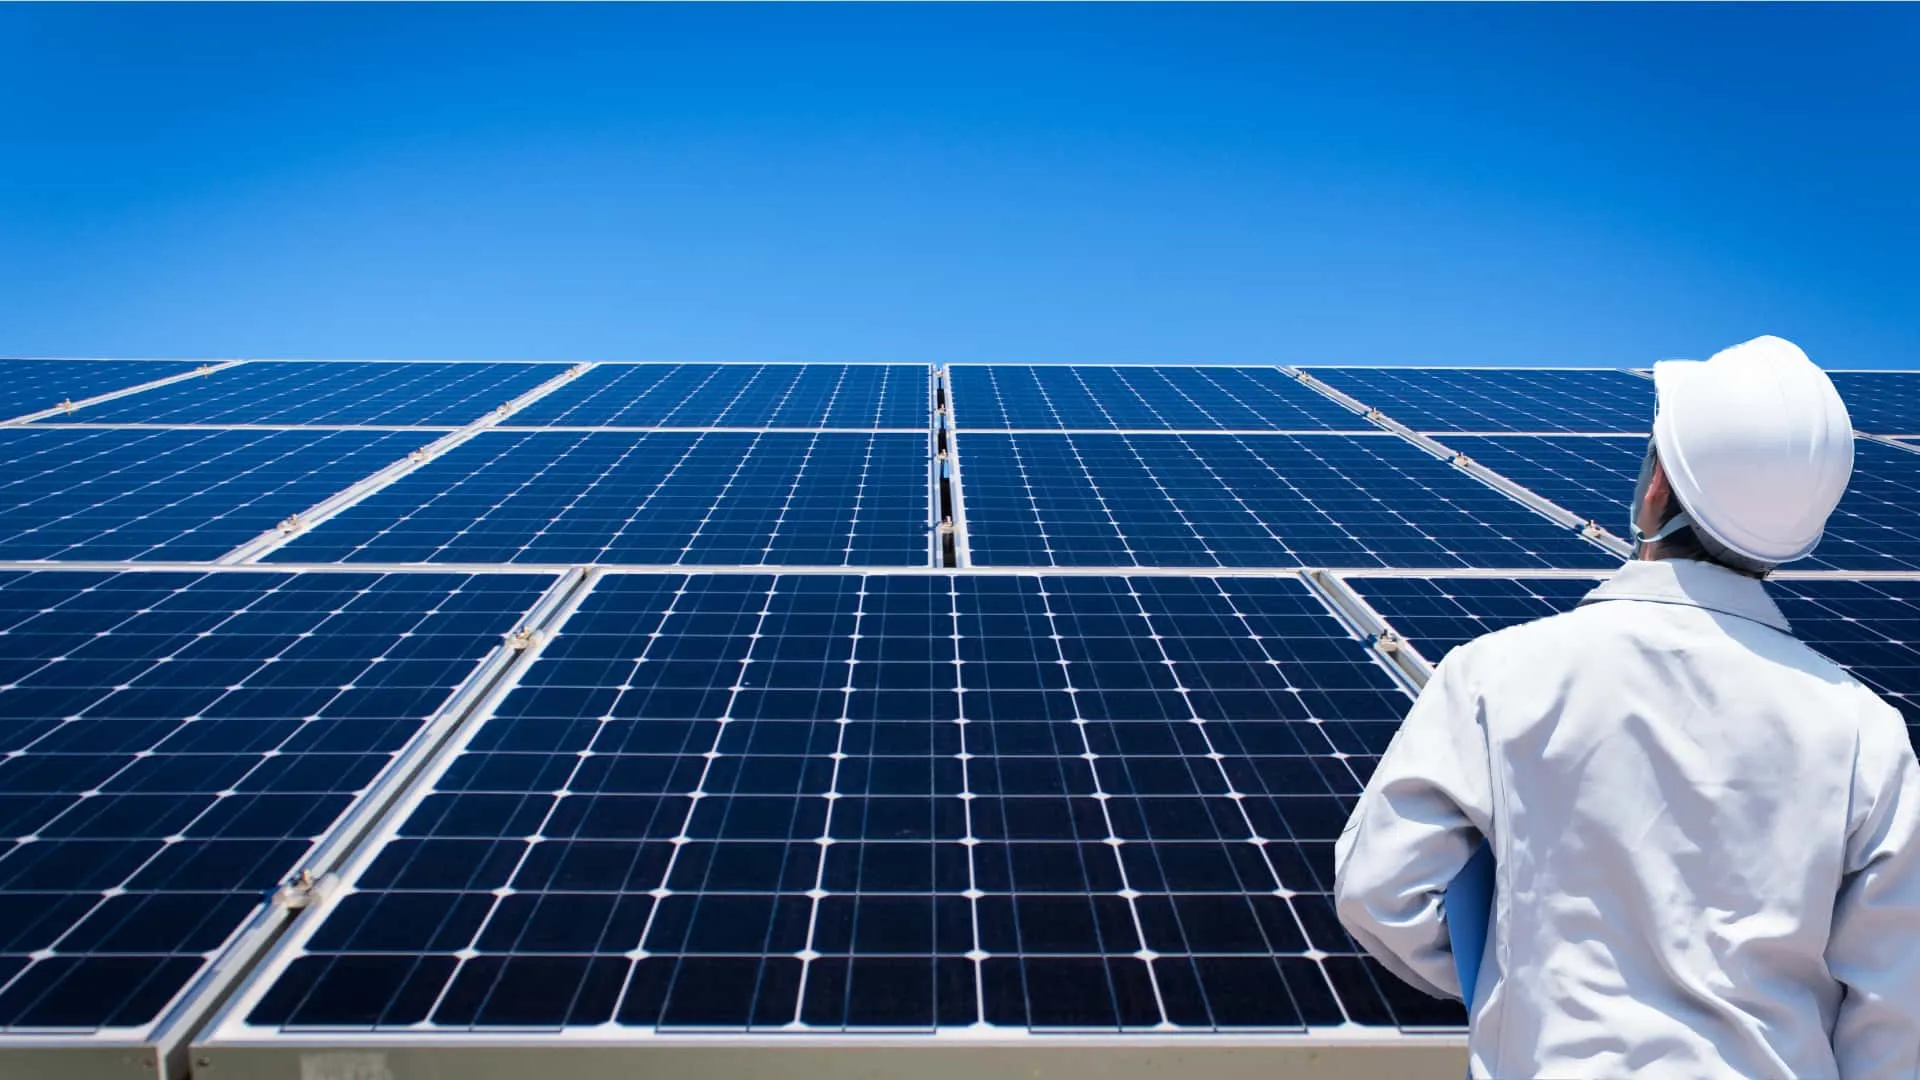 ジャパンホームズのO&Mサービスはお客様の大切な太陽光発電所をしっかり守ります。